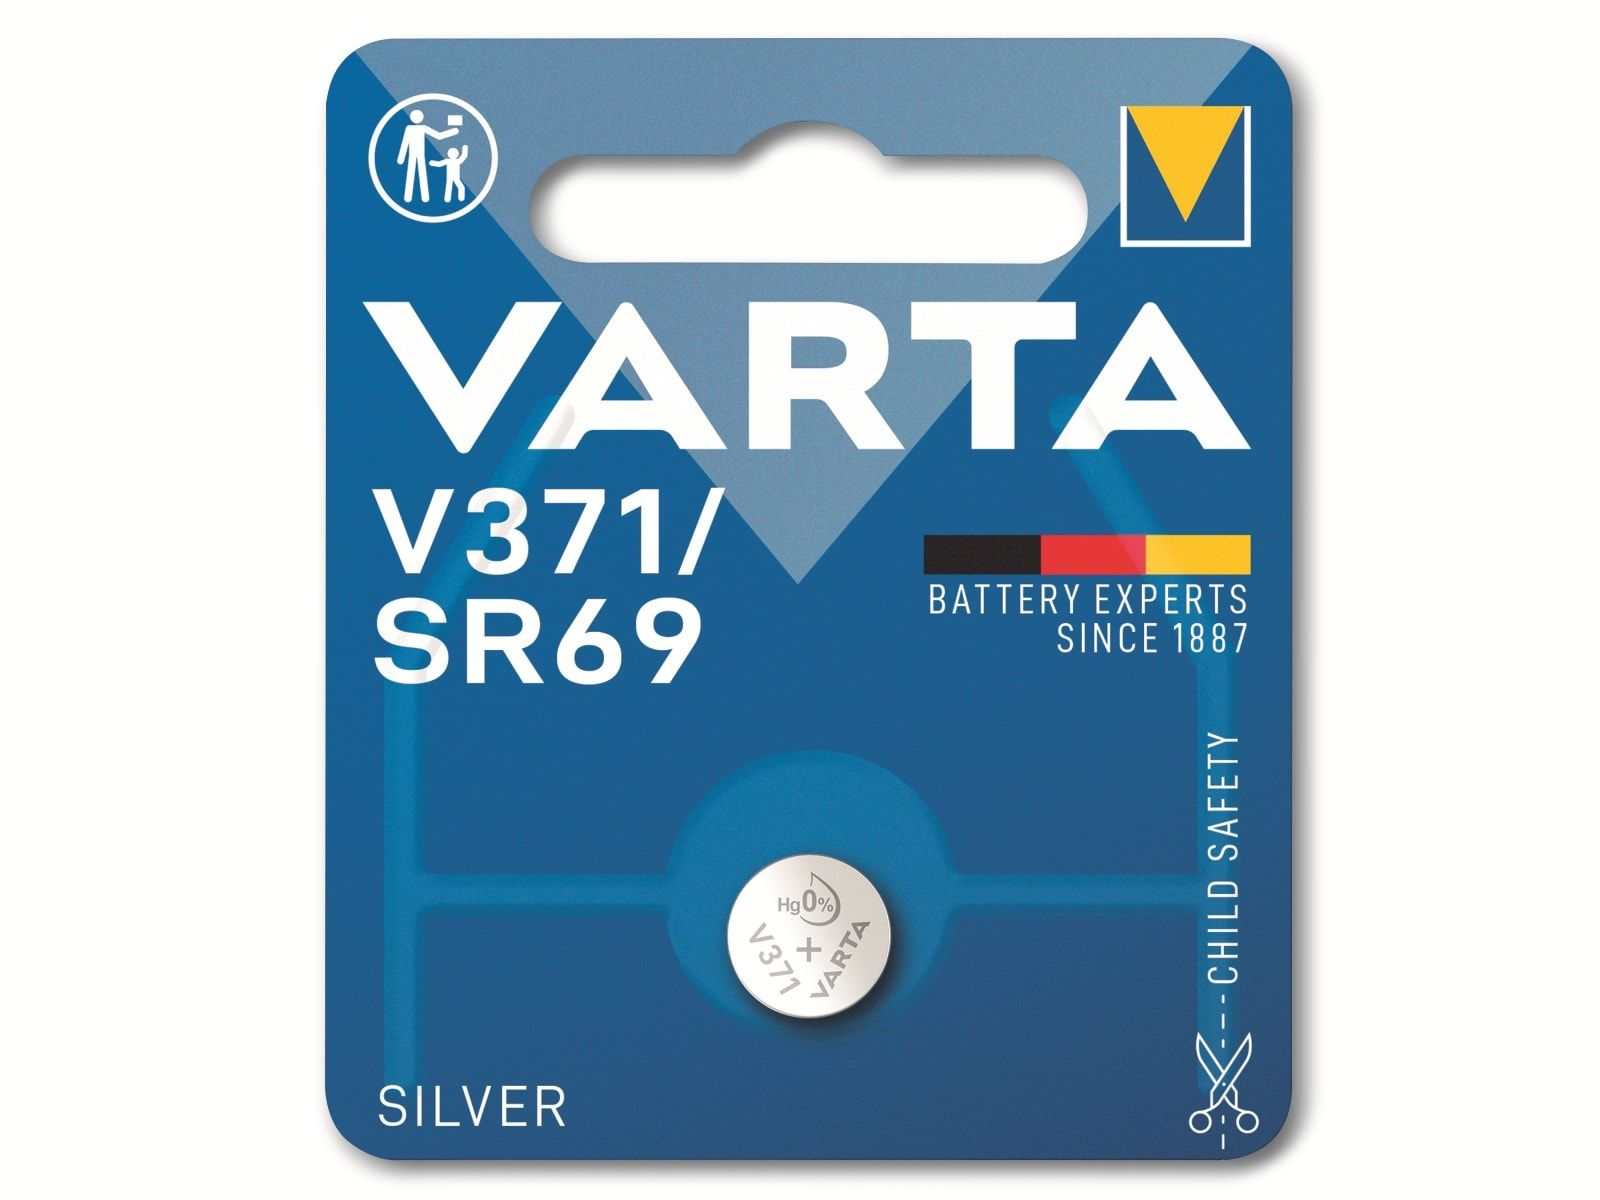 VARTA Knopfzelle Silver Oxide, 371 SR69, 1.55V, 1 Stück von Varta